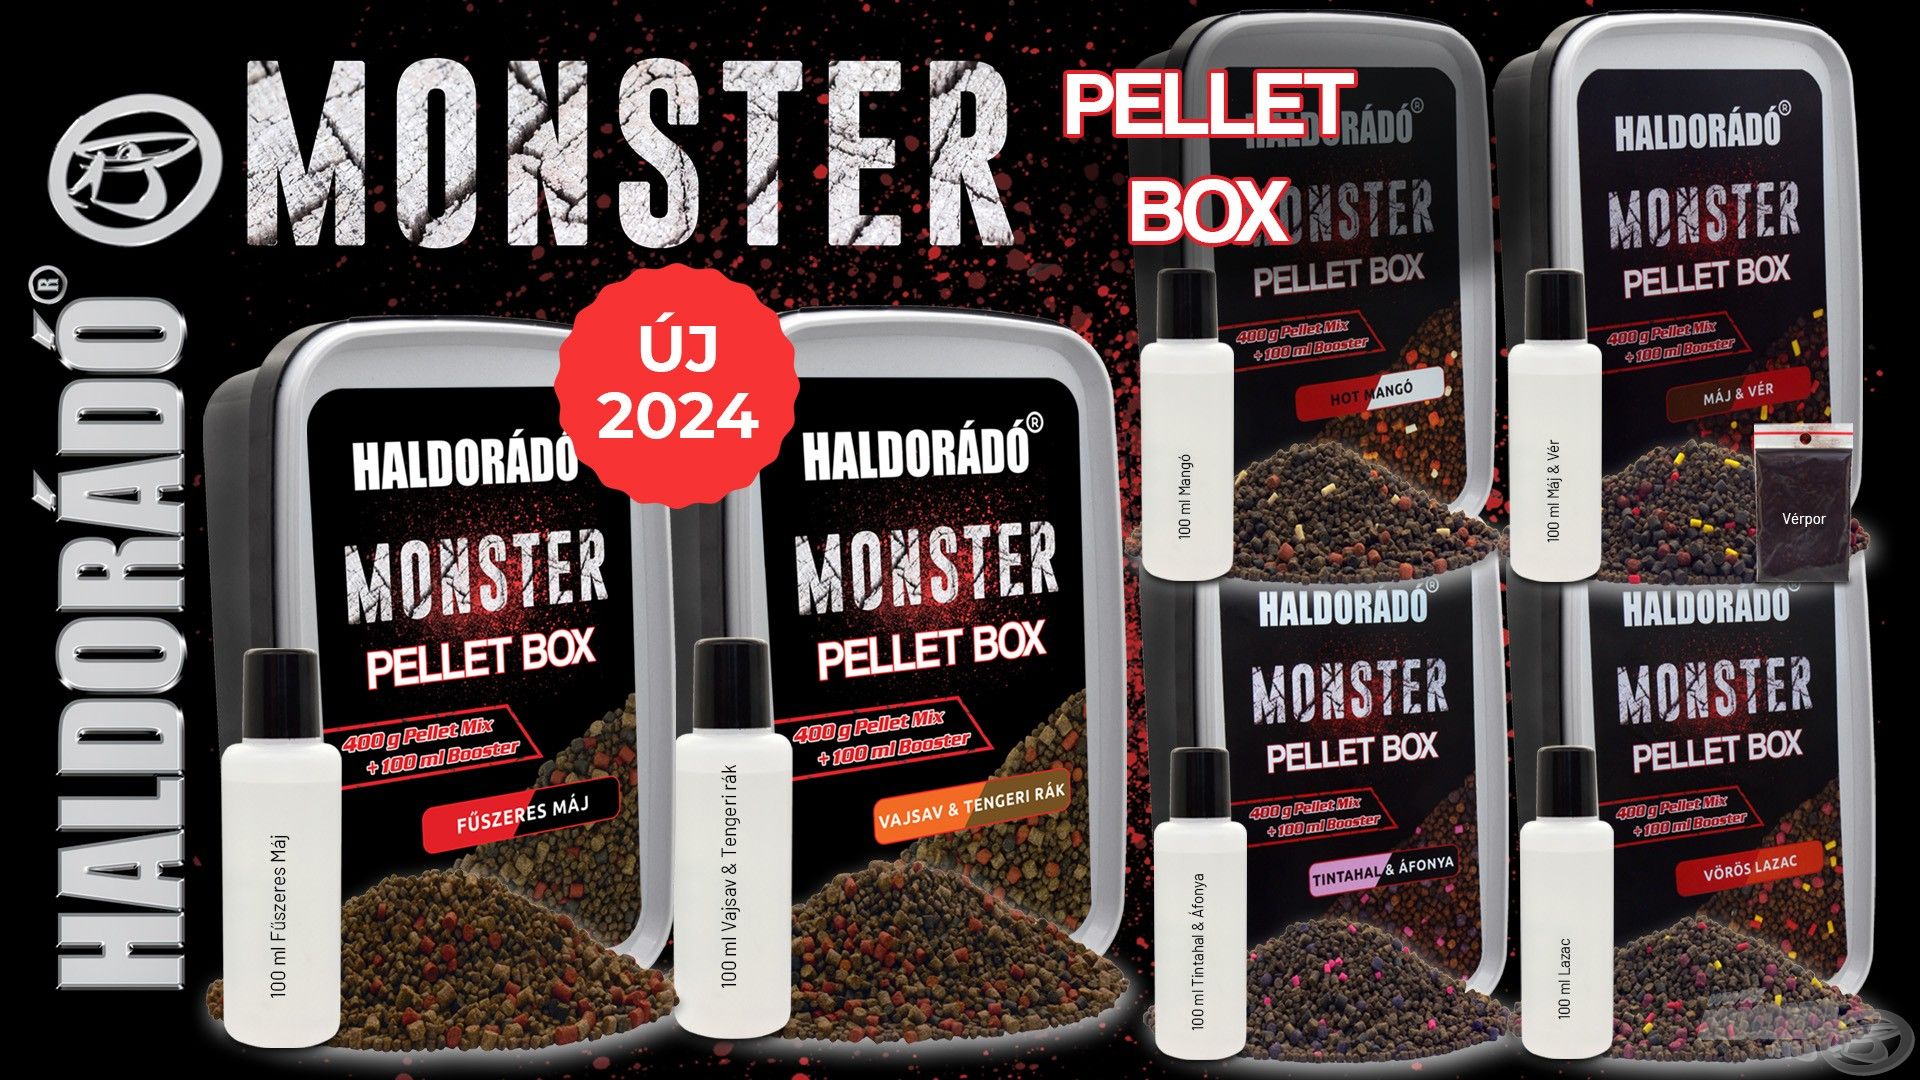 Jelentősen kibővült a MONSTER termékcsaládunk, minden korábbi széria megkapta a Fűszeres Máj, illetve Vajsav & Tengeri rák változatokat, így a MONSTER Pellet Box…